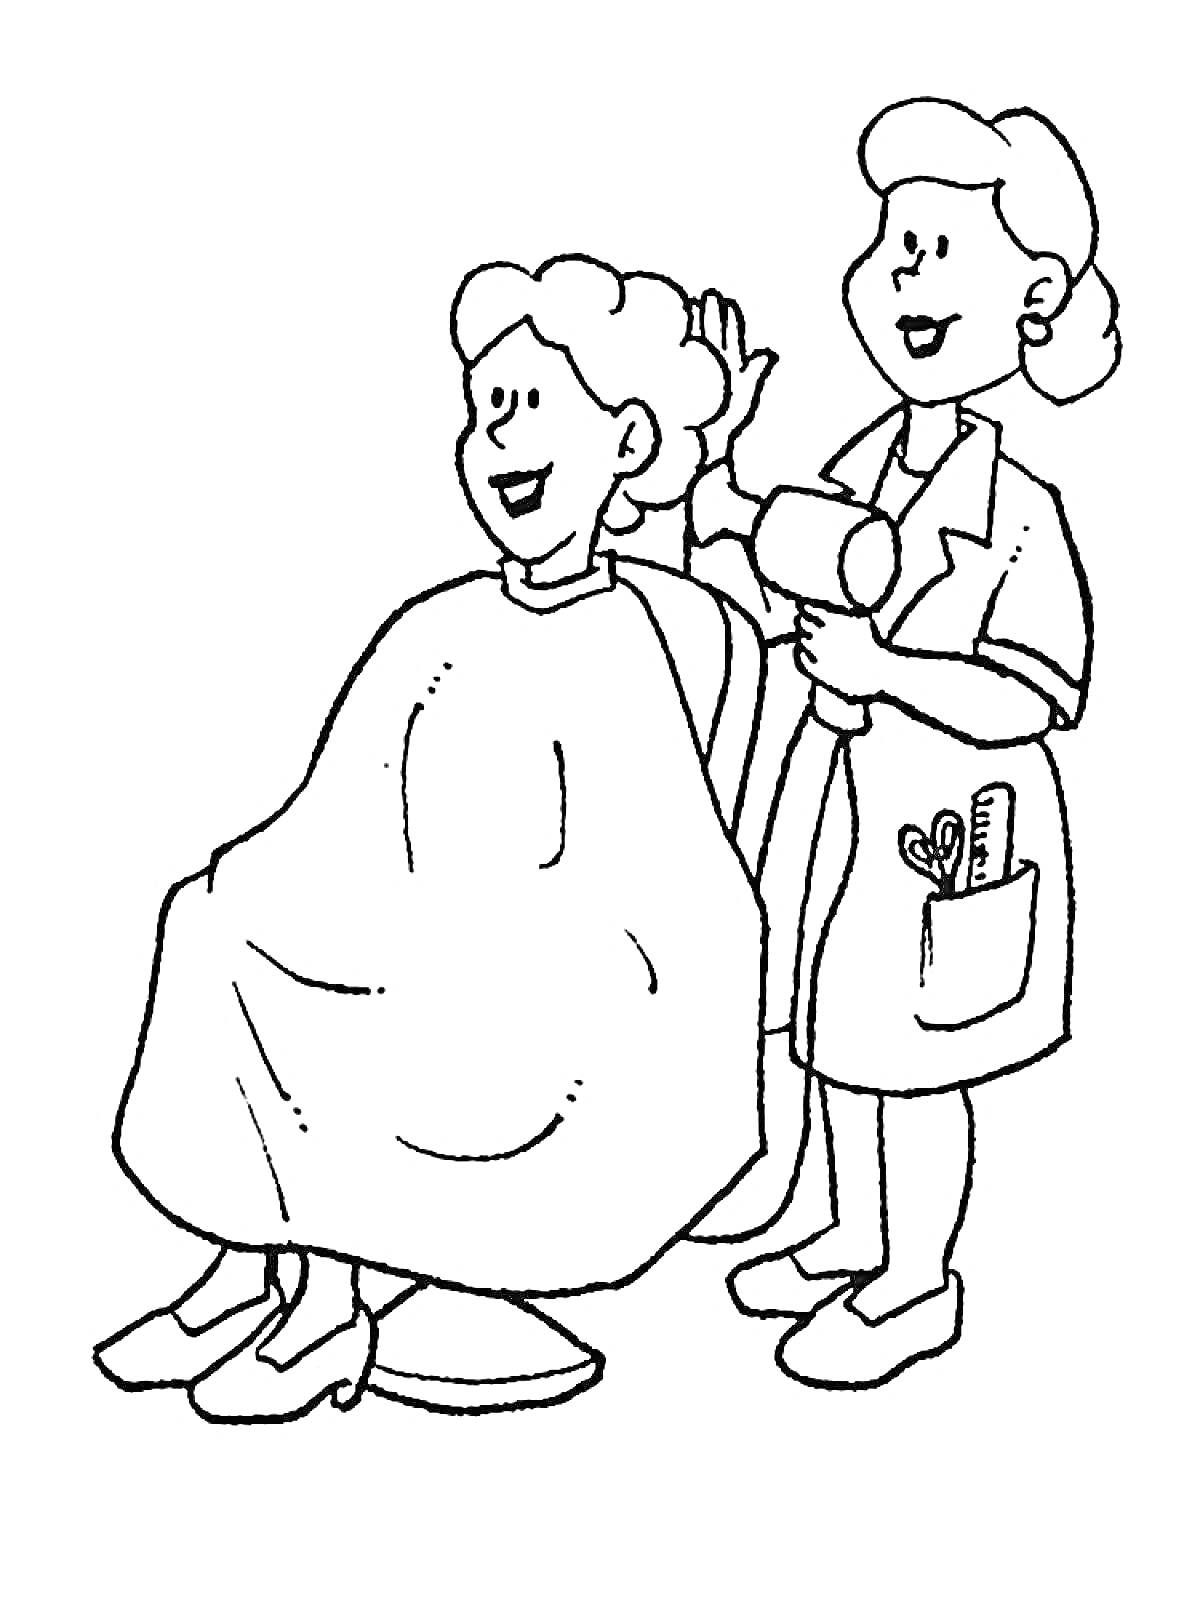 Раскраска Парикмахерская, два человека, клиент и парикмахер, фен, стрижка волос, инструменты в кармане парикмахера